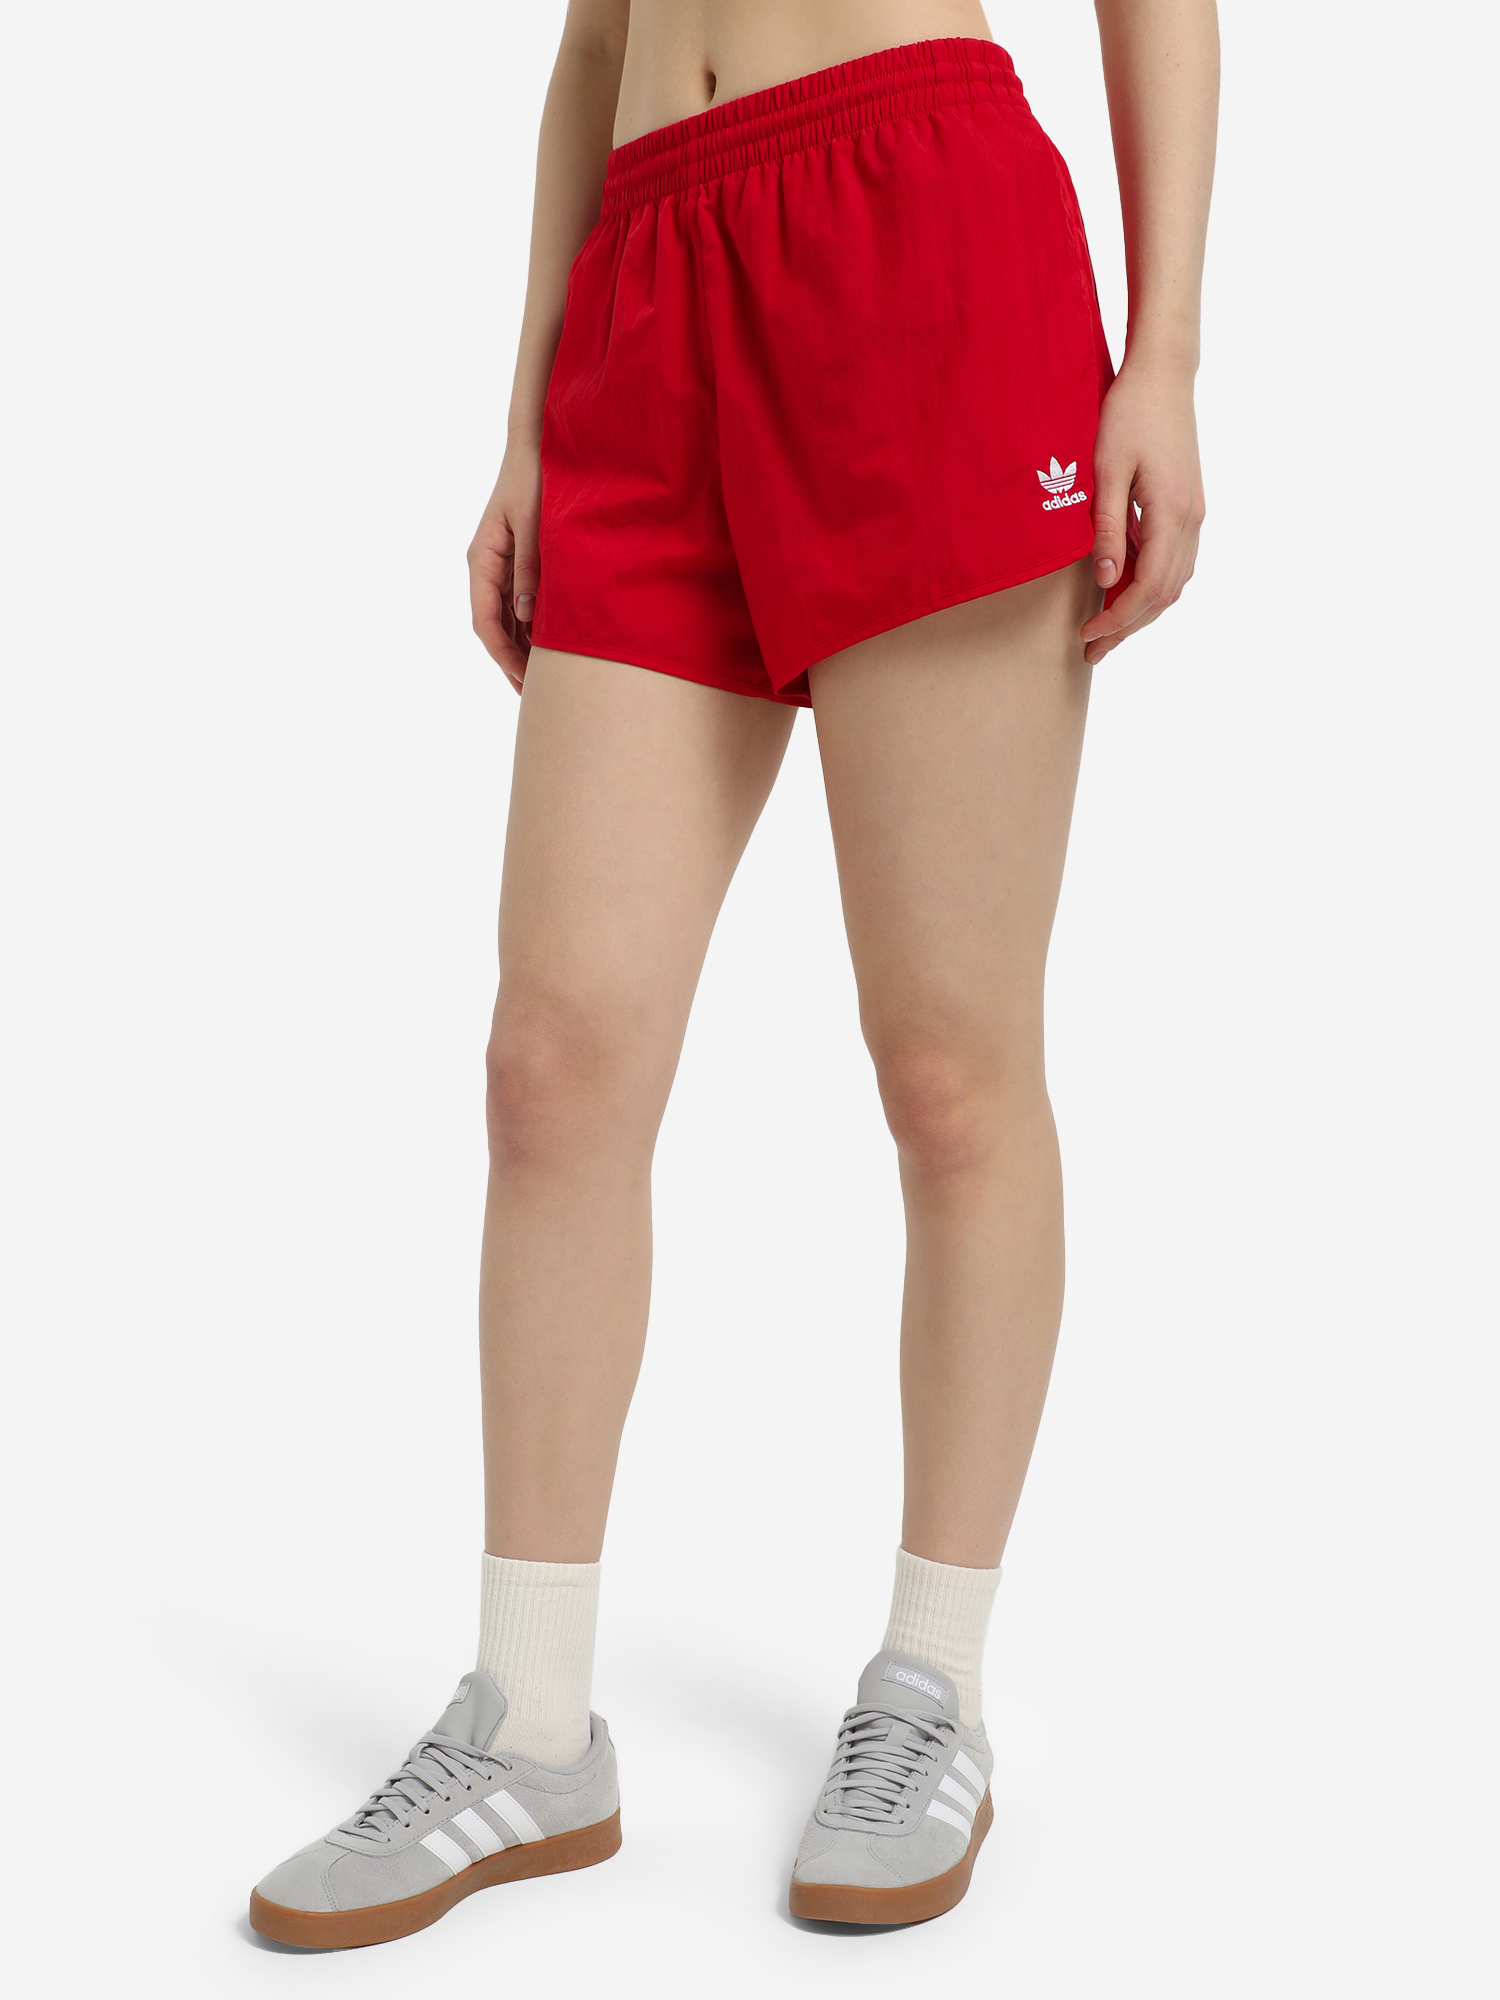 Шорты женские adidas 3-Stripes, Красный легинсы женские adidas красный